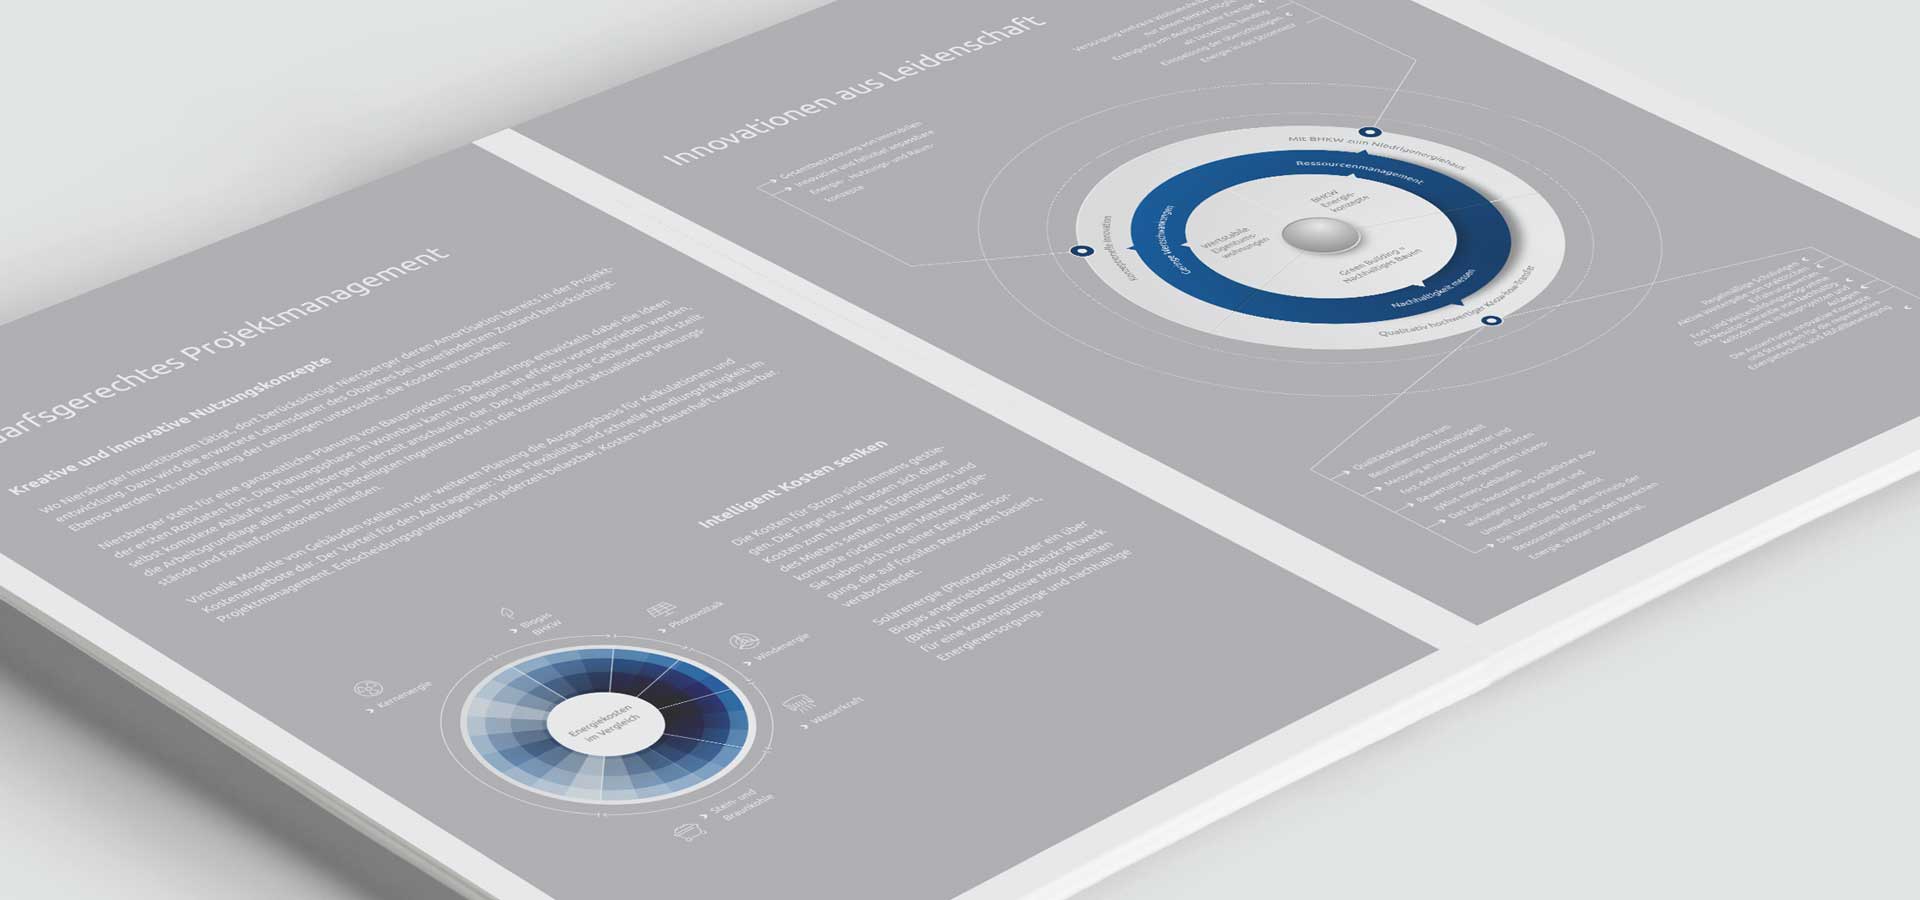 OPUS Marketing / Projekte / Niersberger Group / Kompetenzbroschüre Ausschnitt